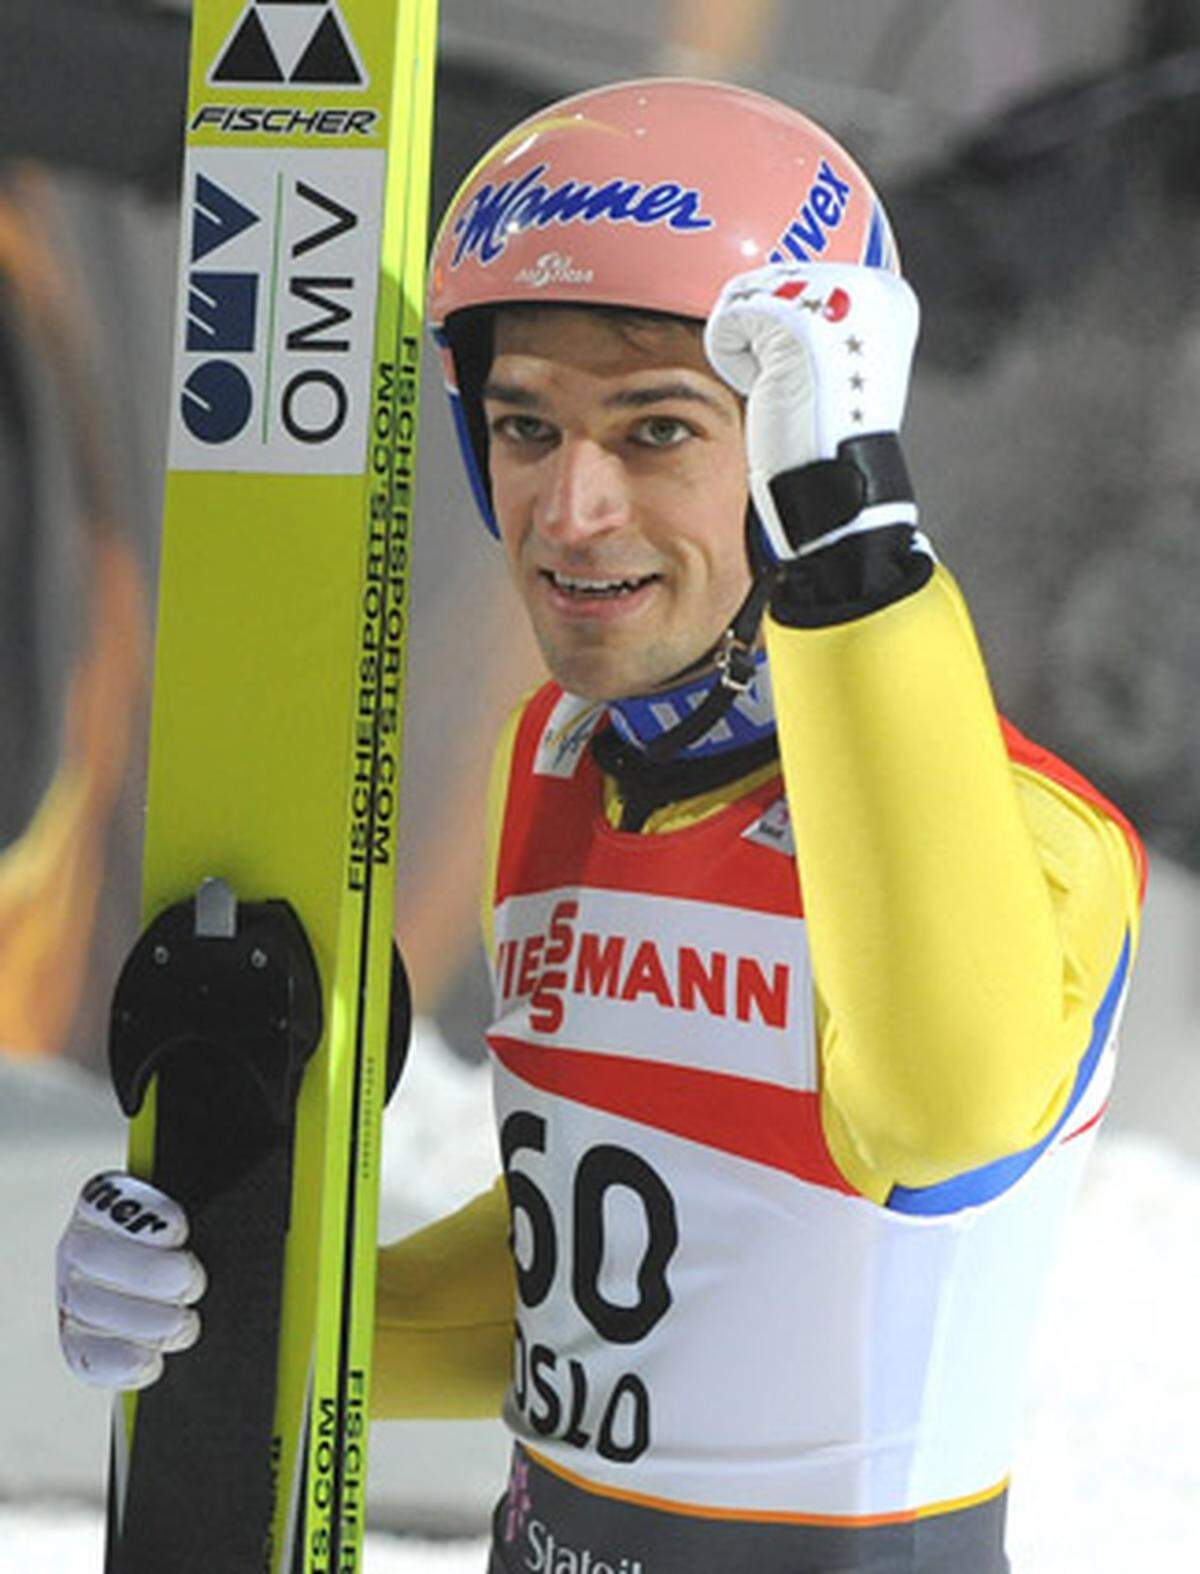 Auch für den Tiroler war Oslo eine Reise wert: Neben zweimal Gold mit dem Team gewann Kofler noch Silber auf der Normalschanze. Eine Goldmedaille mit dem Team in Sapporo 2007 hatte er ja schon zuhause. Das ergibt 3 x Gold, 1 x Silber.